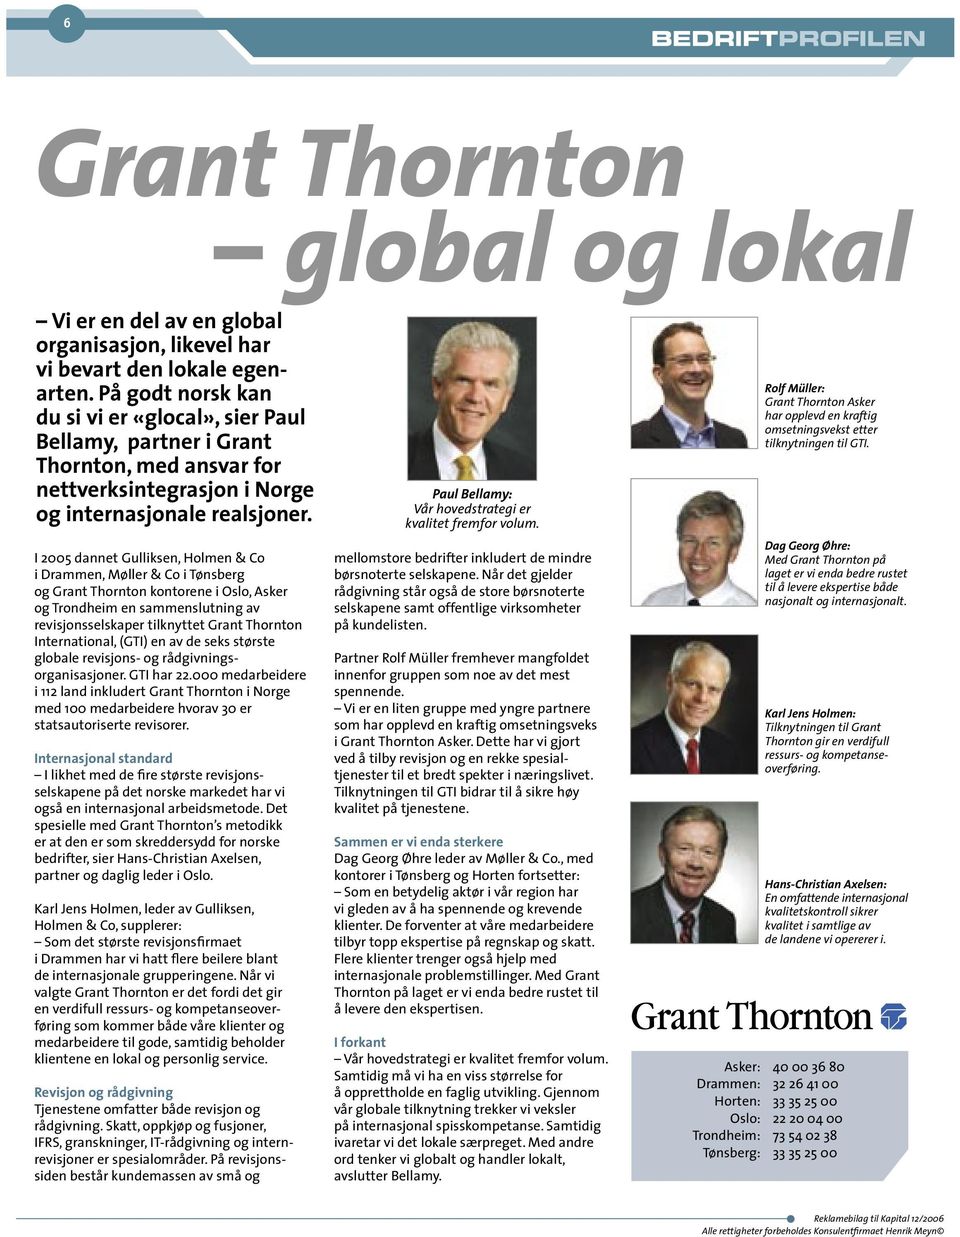 I 2005 dannet Gulliksen, Holmen & Co i Drammen, Møller & Co i Tønsberg og Grant Thornton kontorene i Oslo, Asker og Trondheim en sammenslutning av revisjonsselskaper tilknyttet Grant Thornton